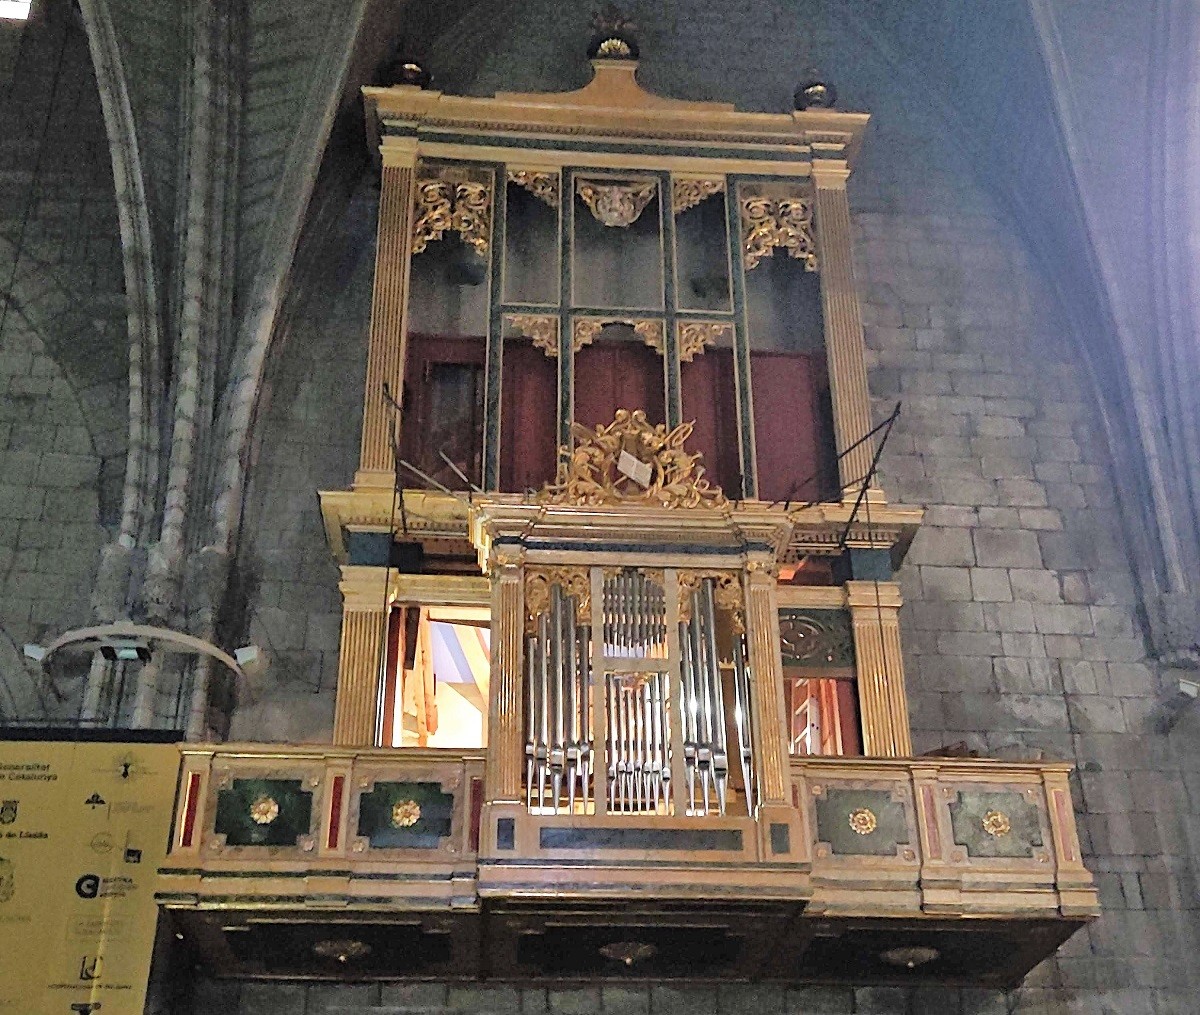 Des de finals de novembre, tècnics de Blancafort Orgueners de Montserrat SL estan duent a terme el muntatge de tots els elements ja restaurats de l'orgue.